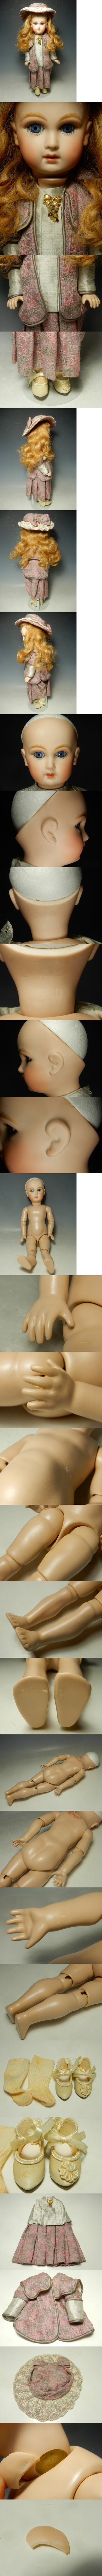 限定品定番988/○ビスクドール 女の子 アンティーク 西洋人形 陶器人形 LINTREPIDE 刻印在 Real Seeley Body USA ビスクドール